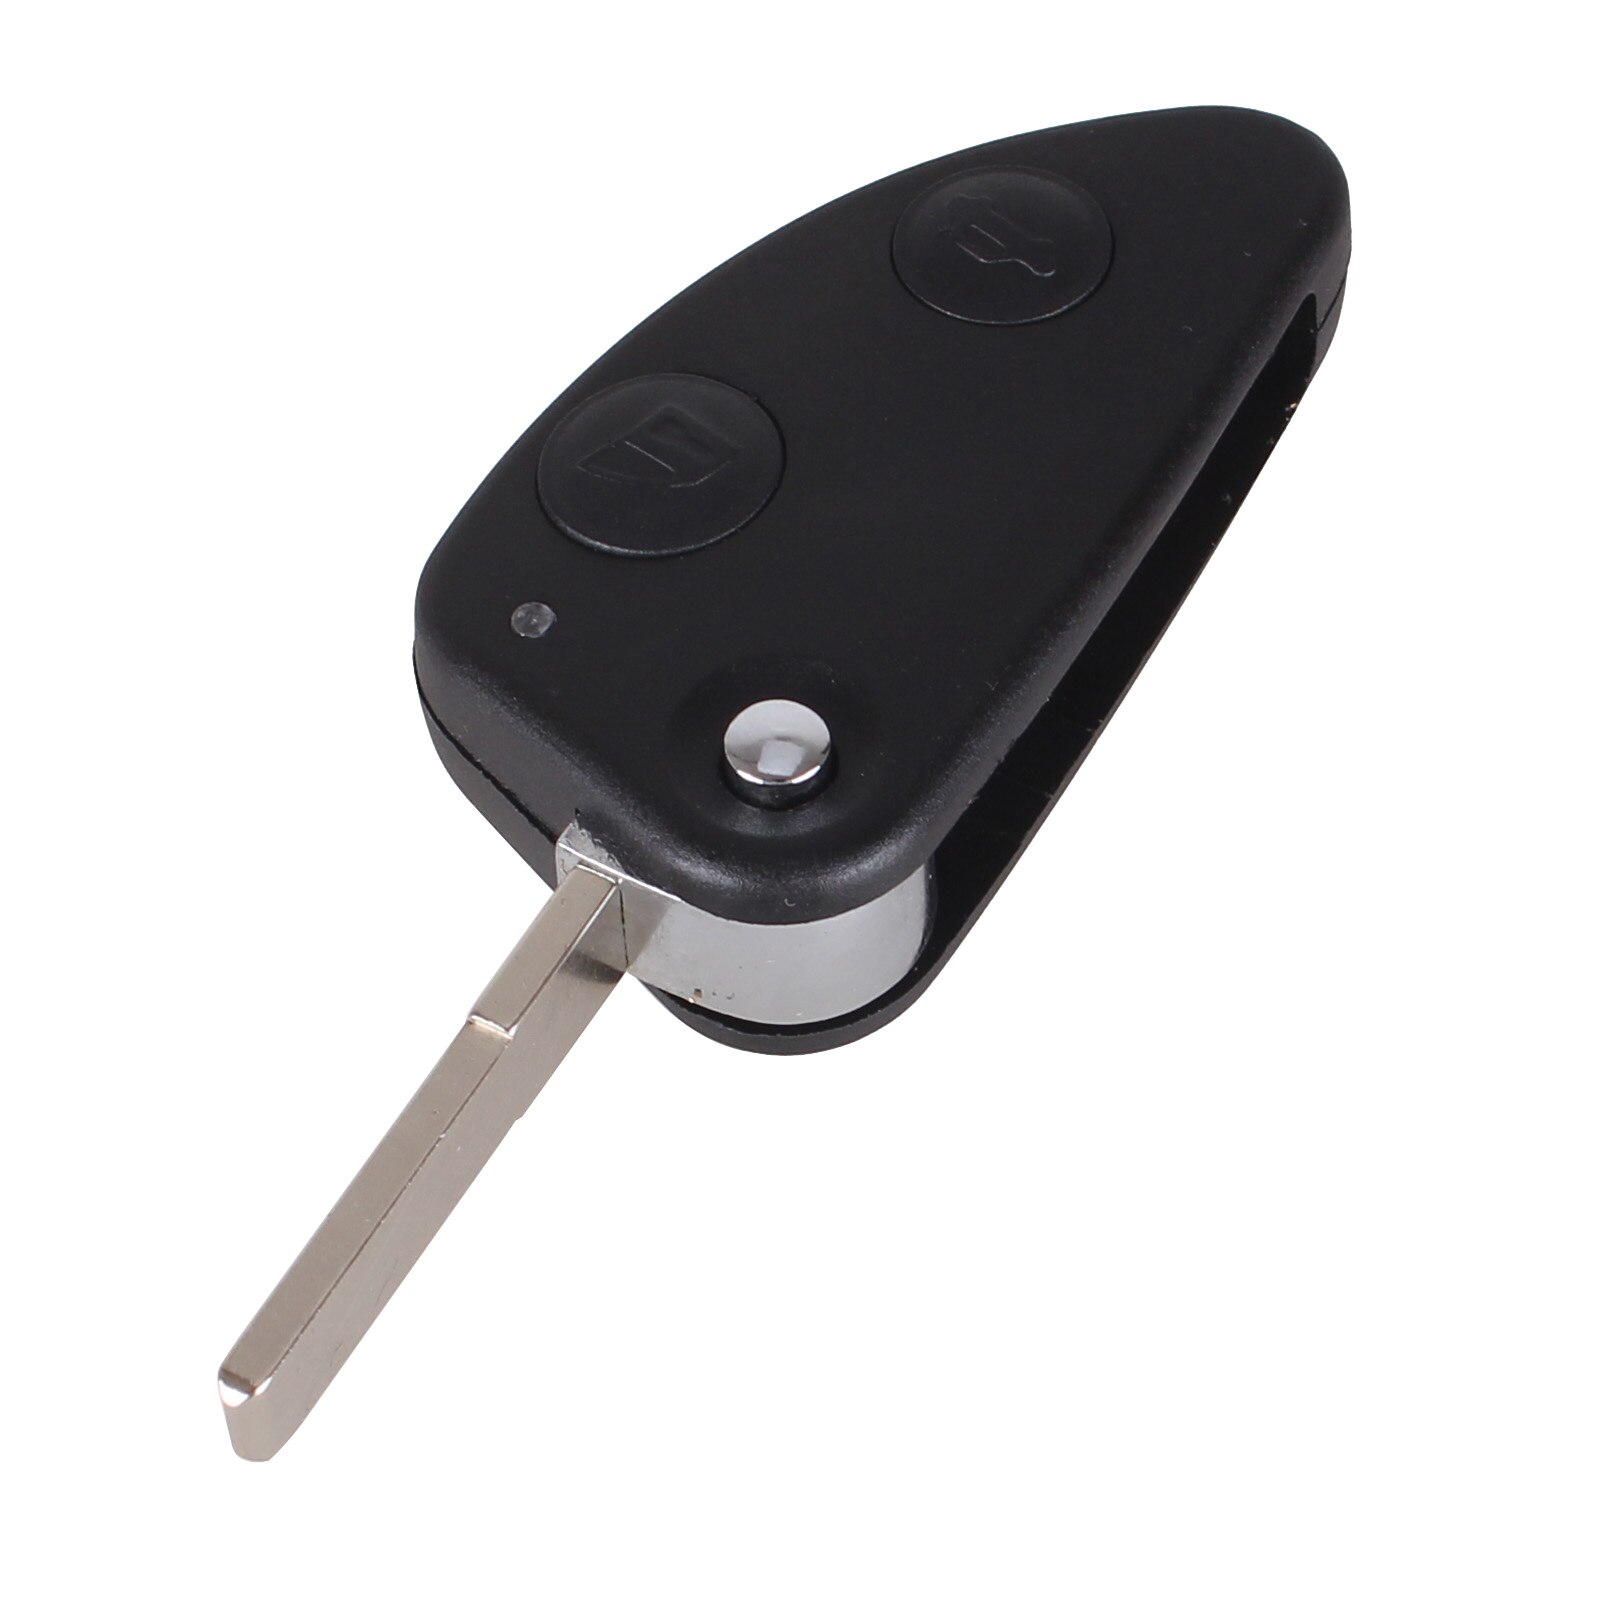 2 Buttons Key Shell Car Flip Folding Remote Key Case Key